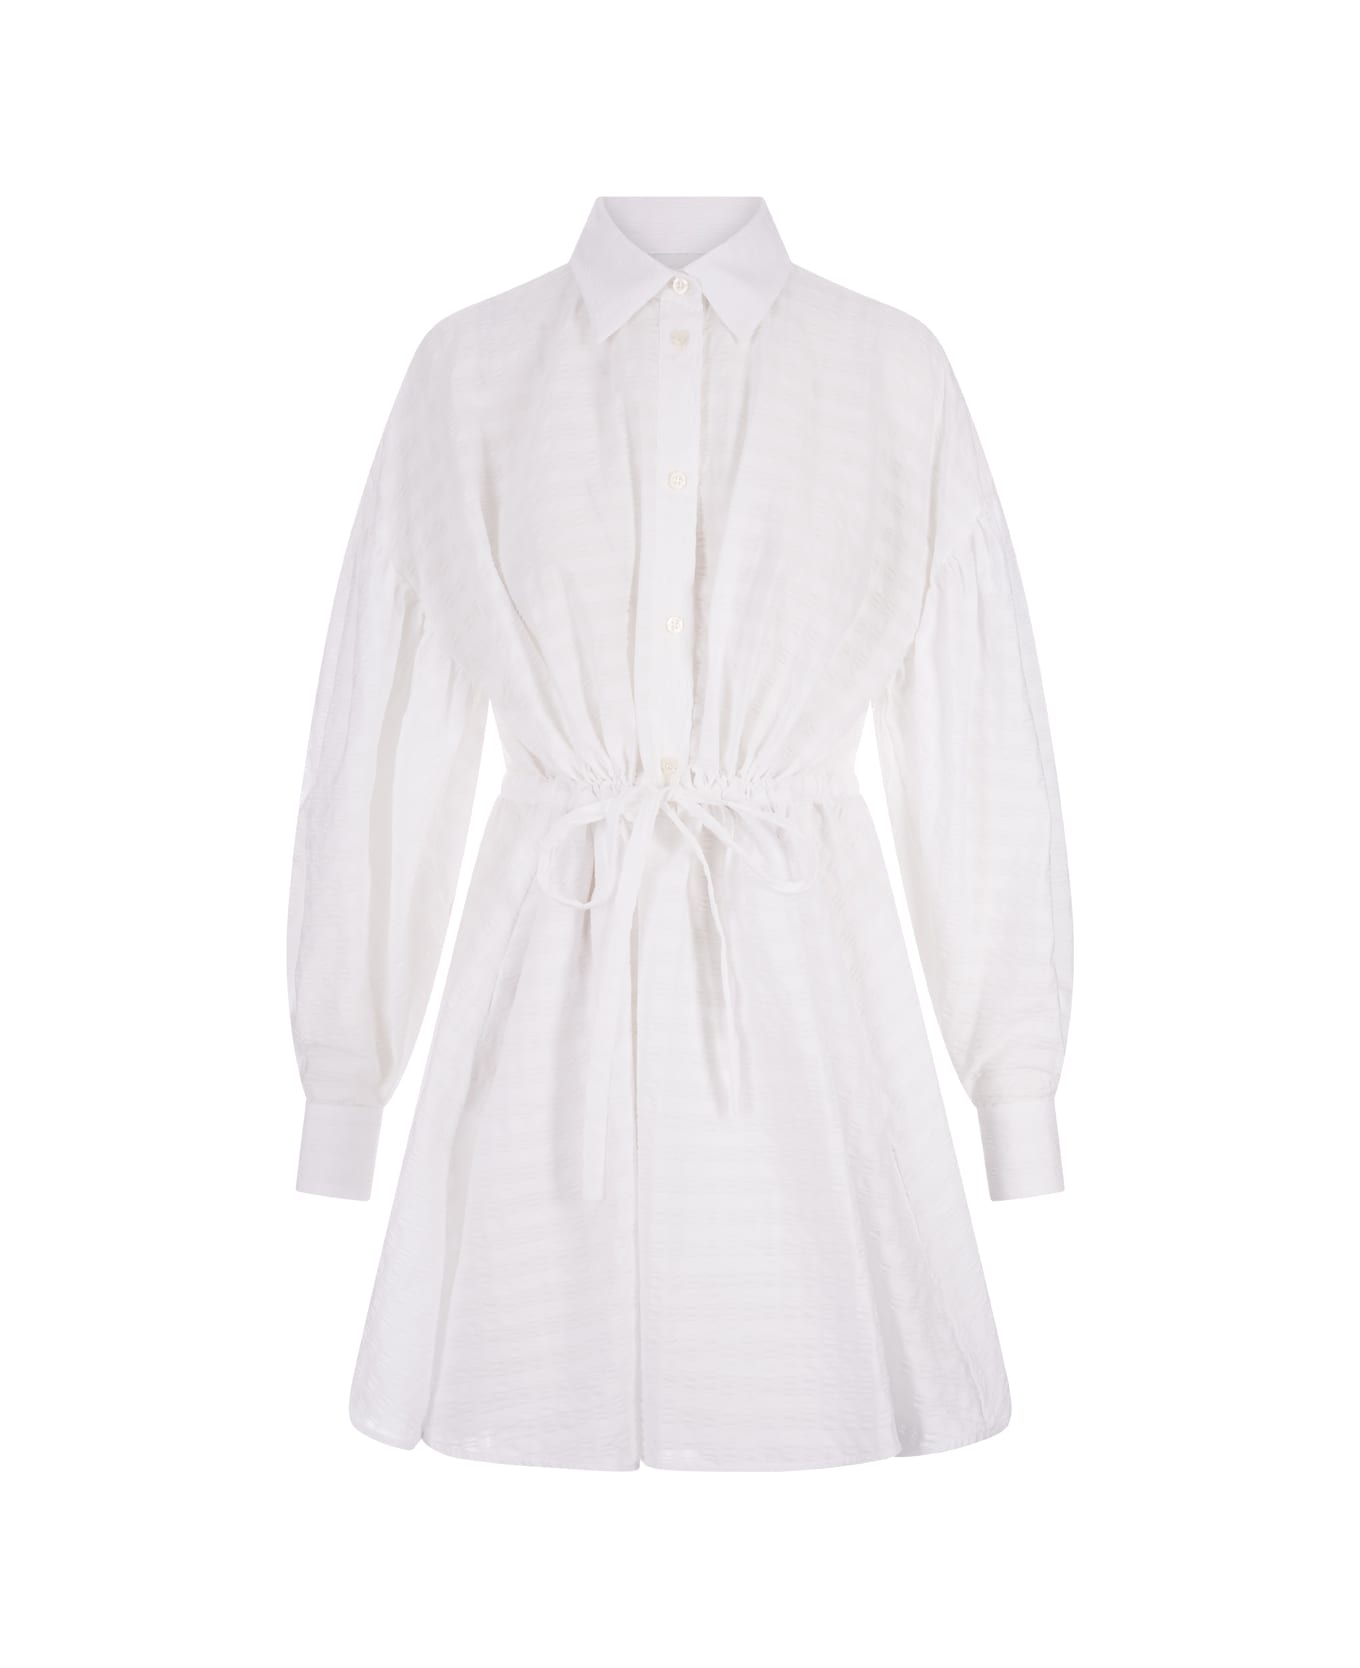 MSGM Short Dress With Adjustable Waist In White Cotton Seersucker - White